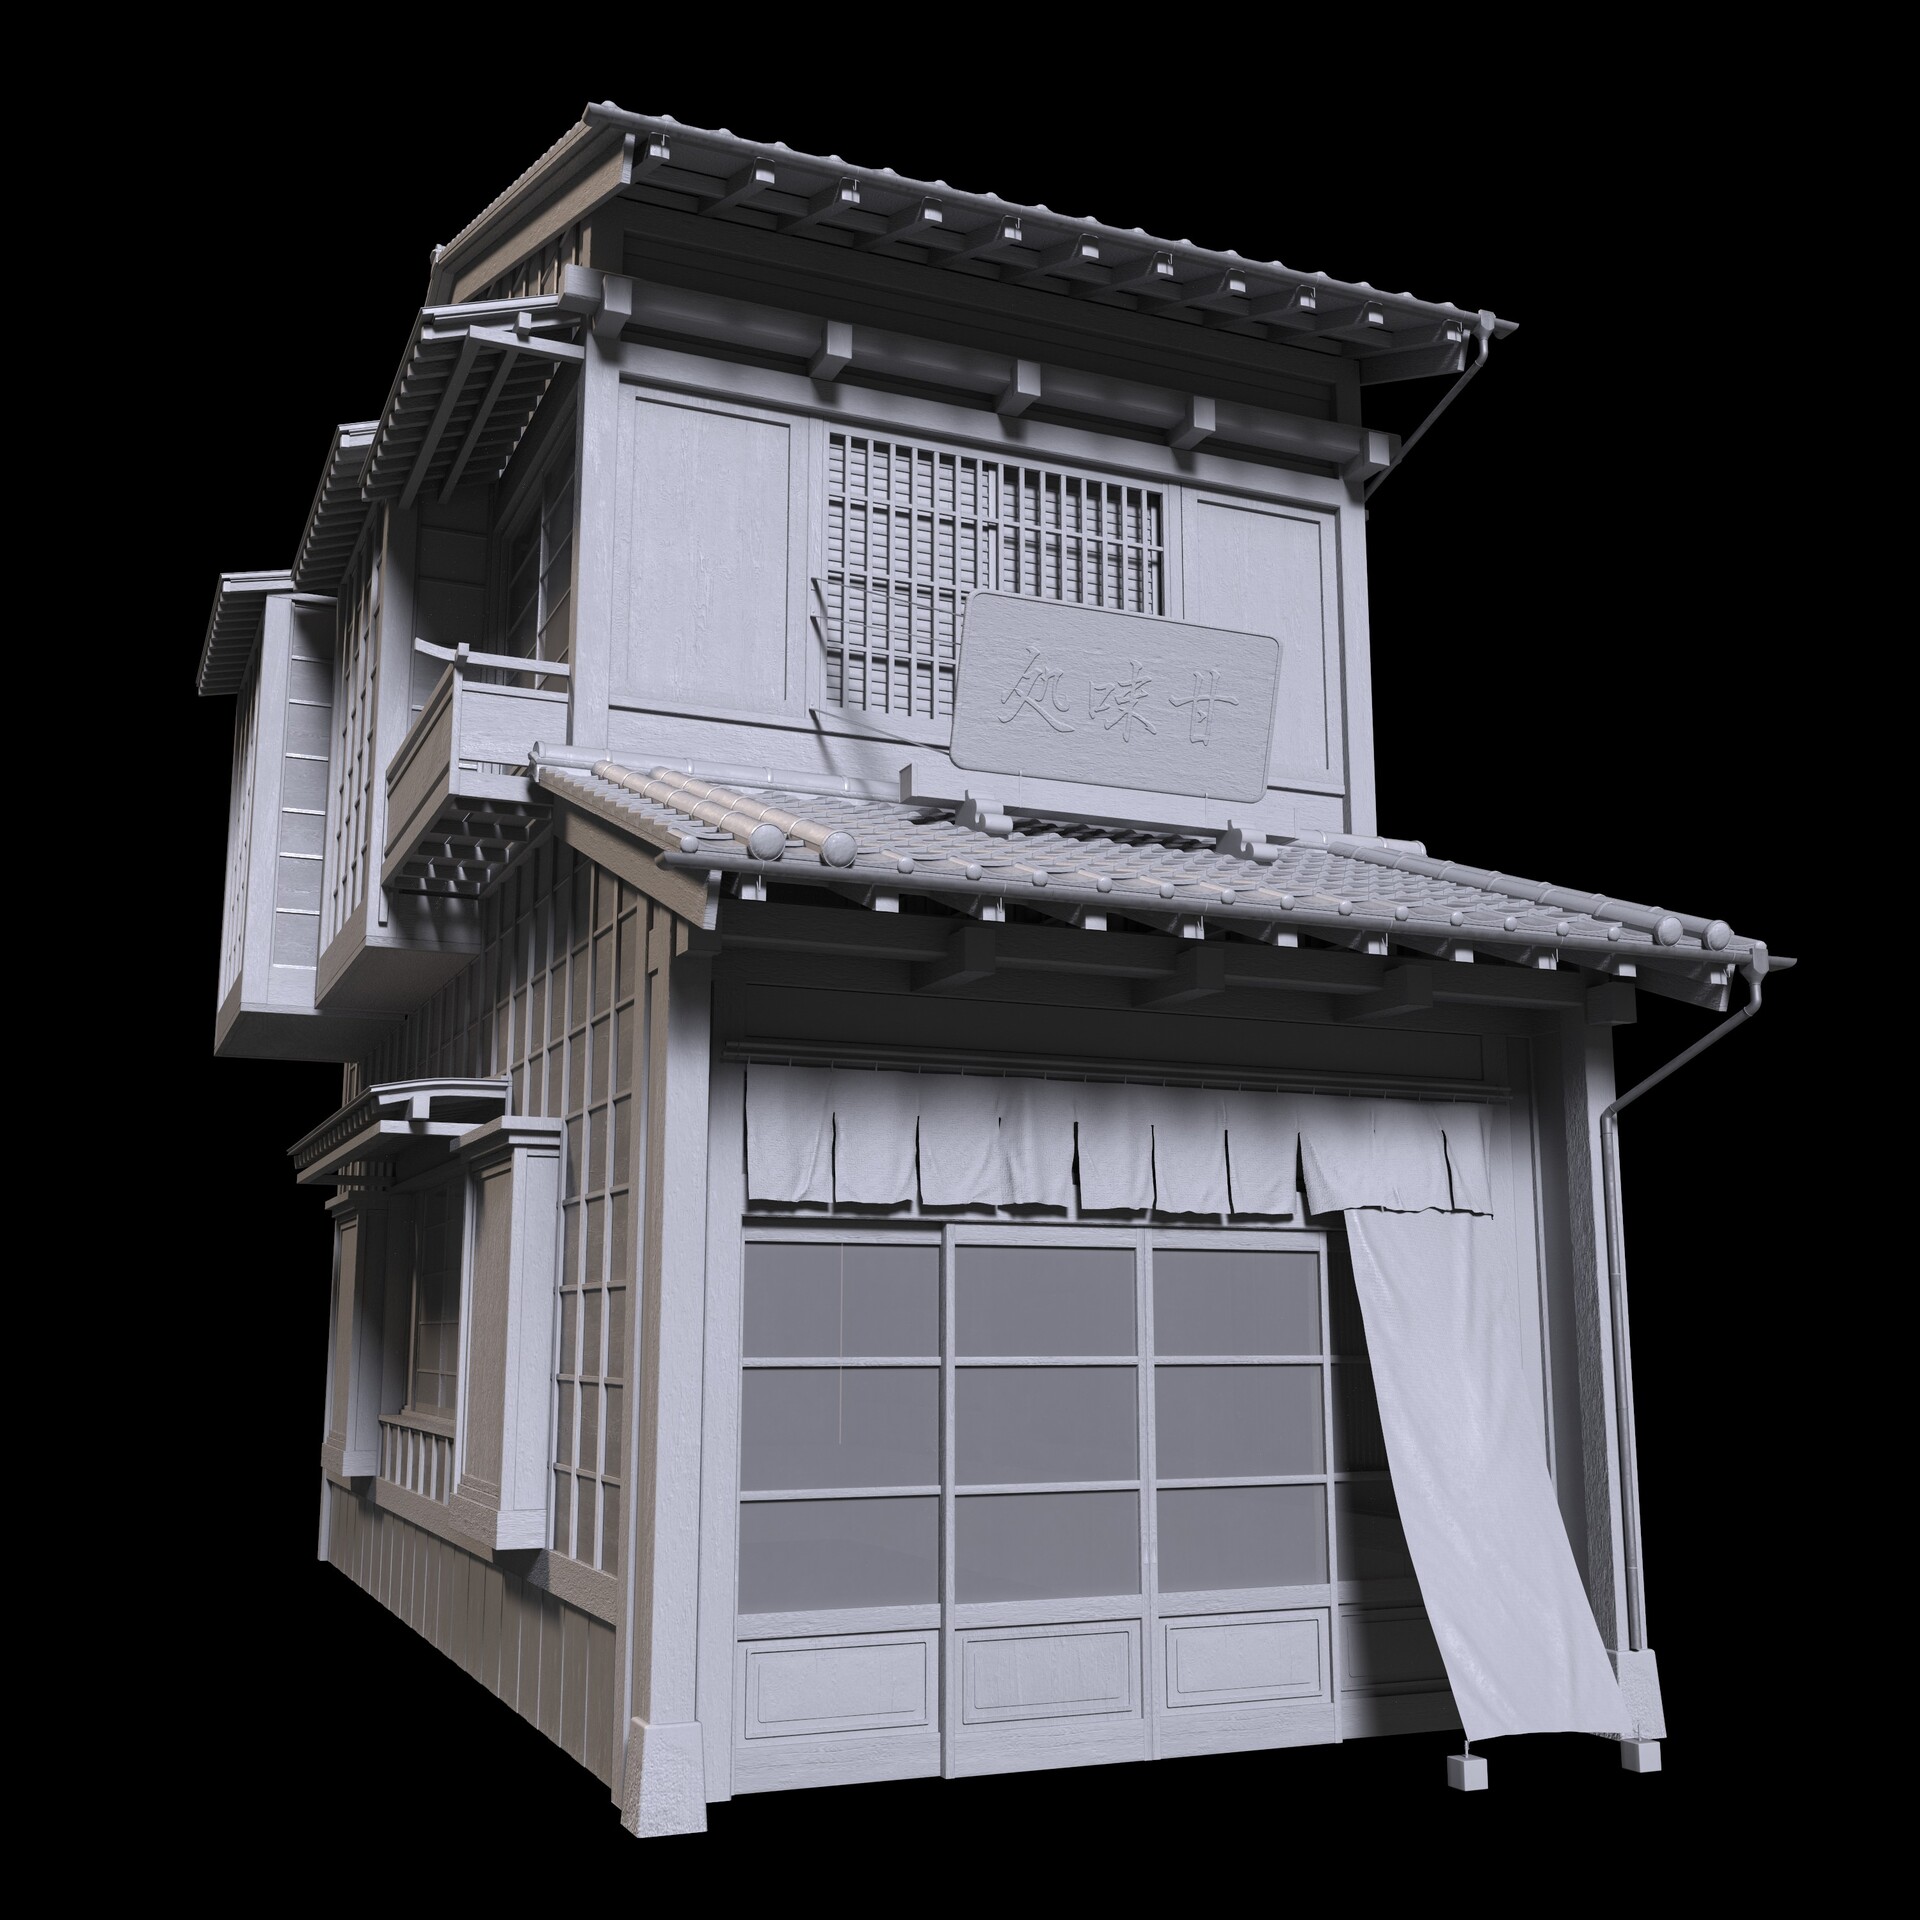 ArtStation - JAPANESE STYLED HOUSE